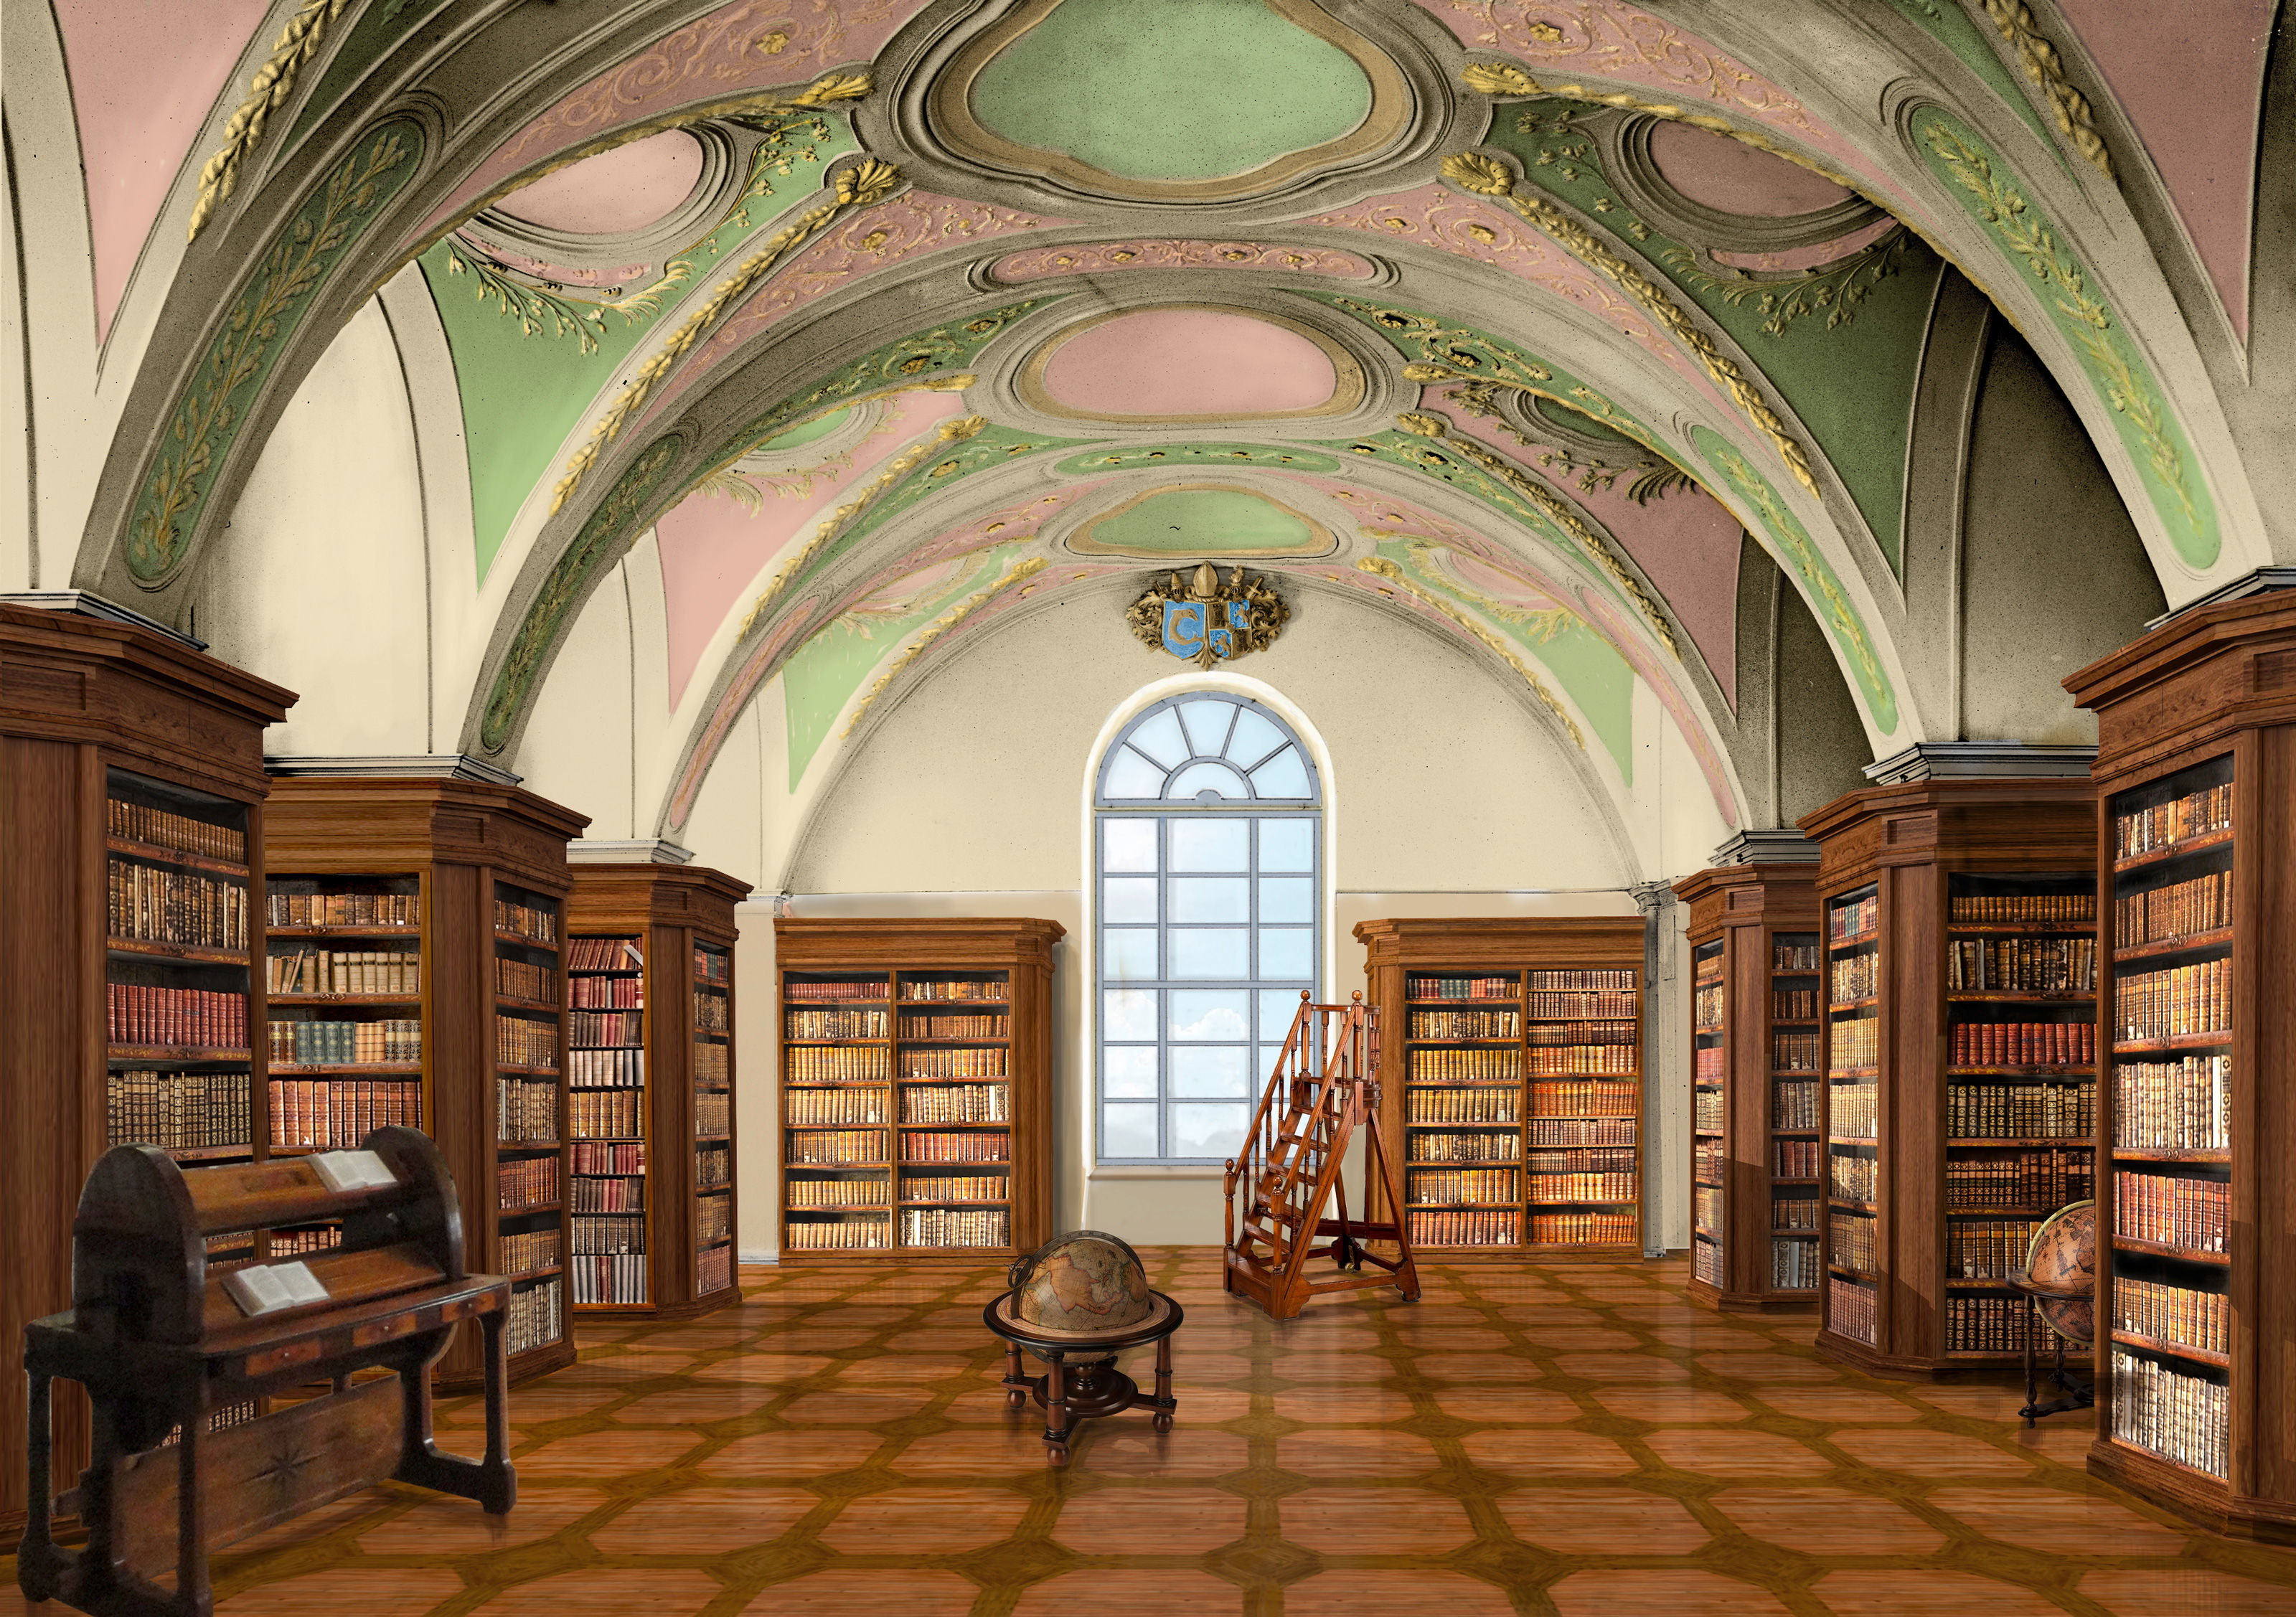 Oculus-illustration-rheinau-klosterinsel-bibliotheque-3d-rekonstruktion